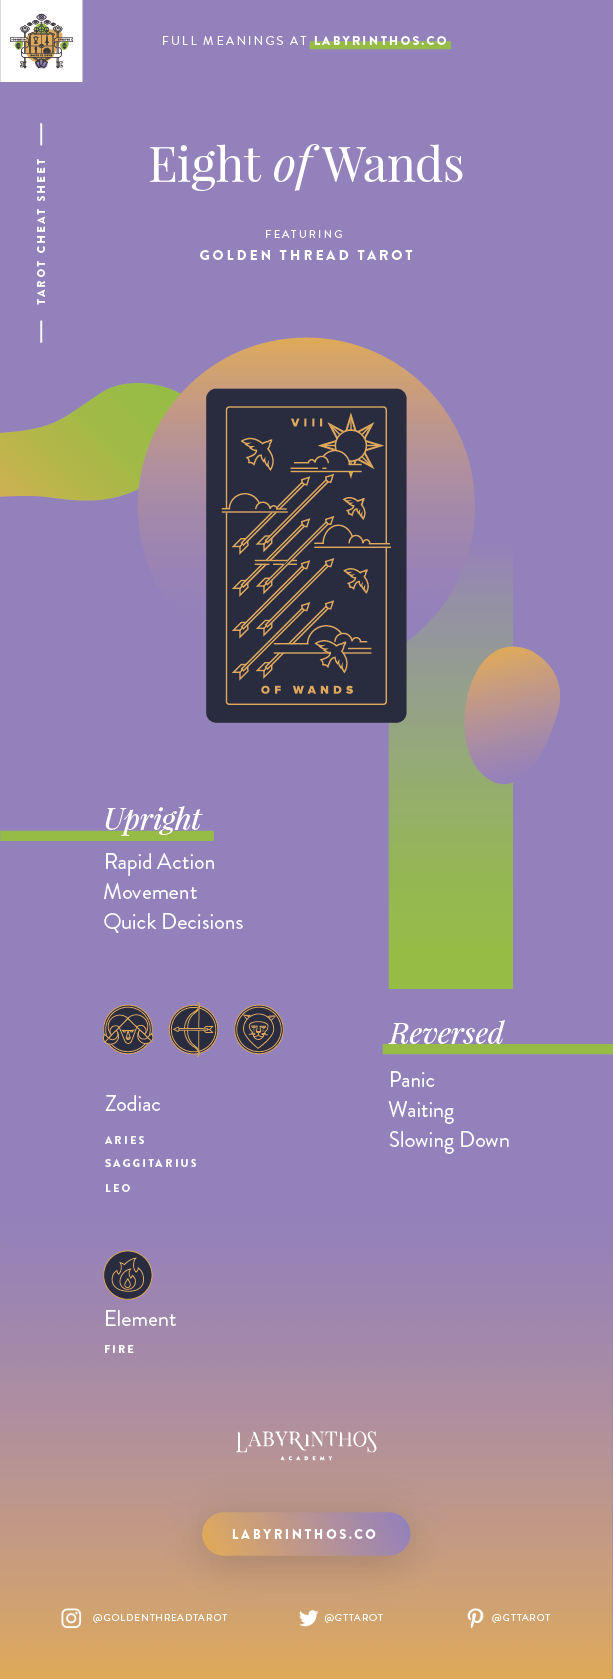 Eight of Wands Tarot Card Meaning, Tarot Oak